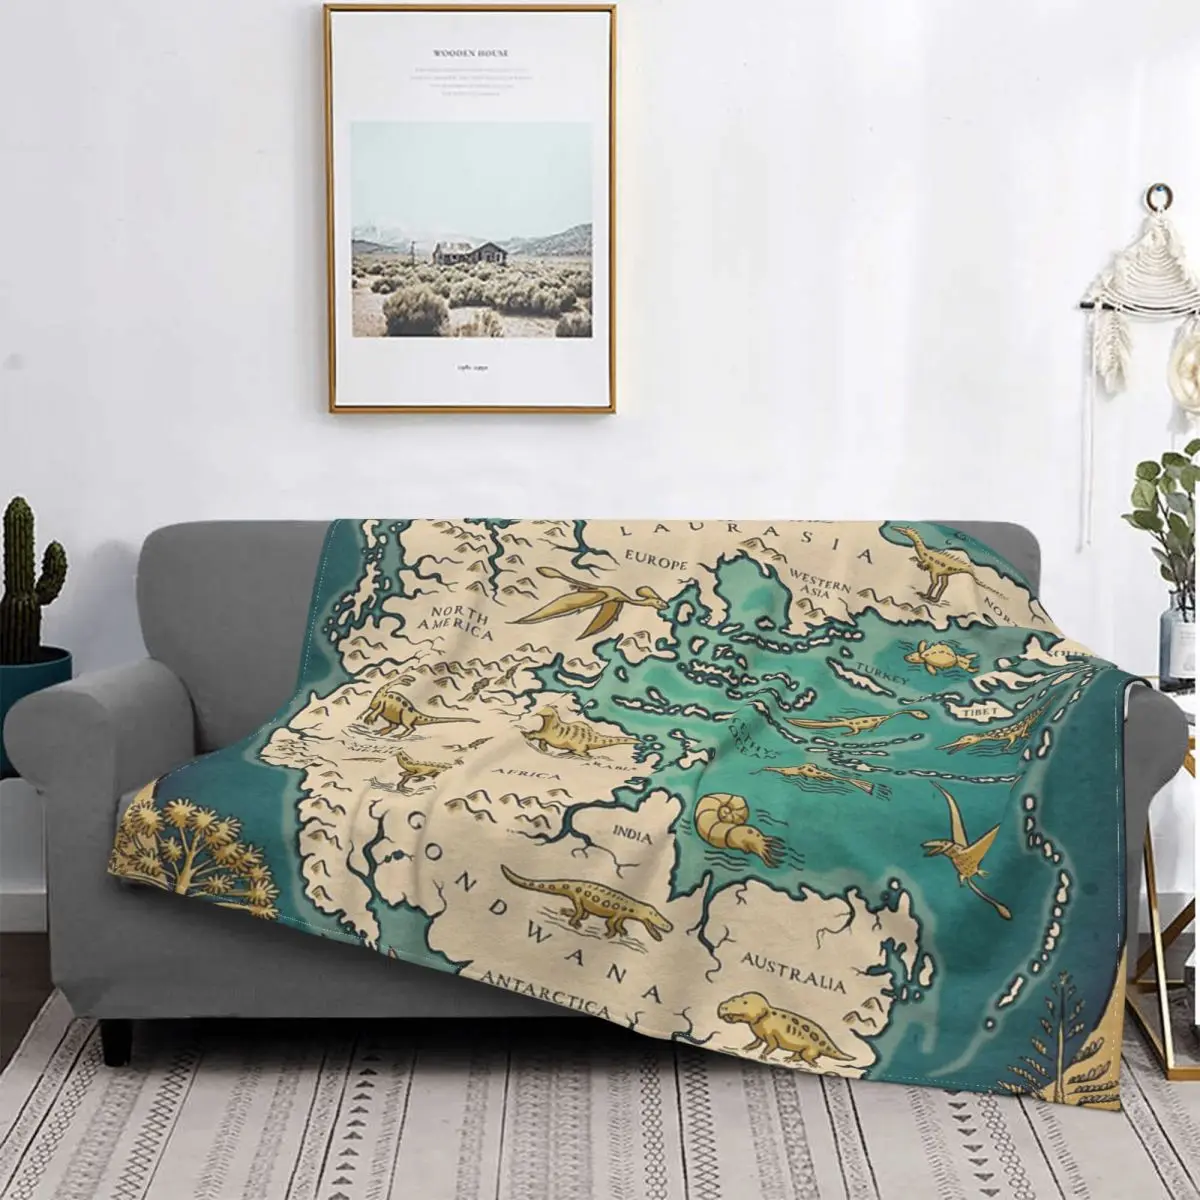 

Покрывало с картой суперконтинента Pangaea покрывало для кровати плед покрывала для дивана теплое одеяло детское одеяло